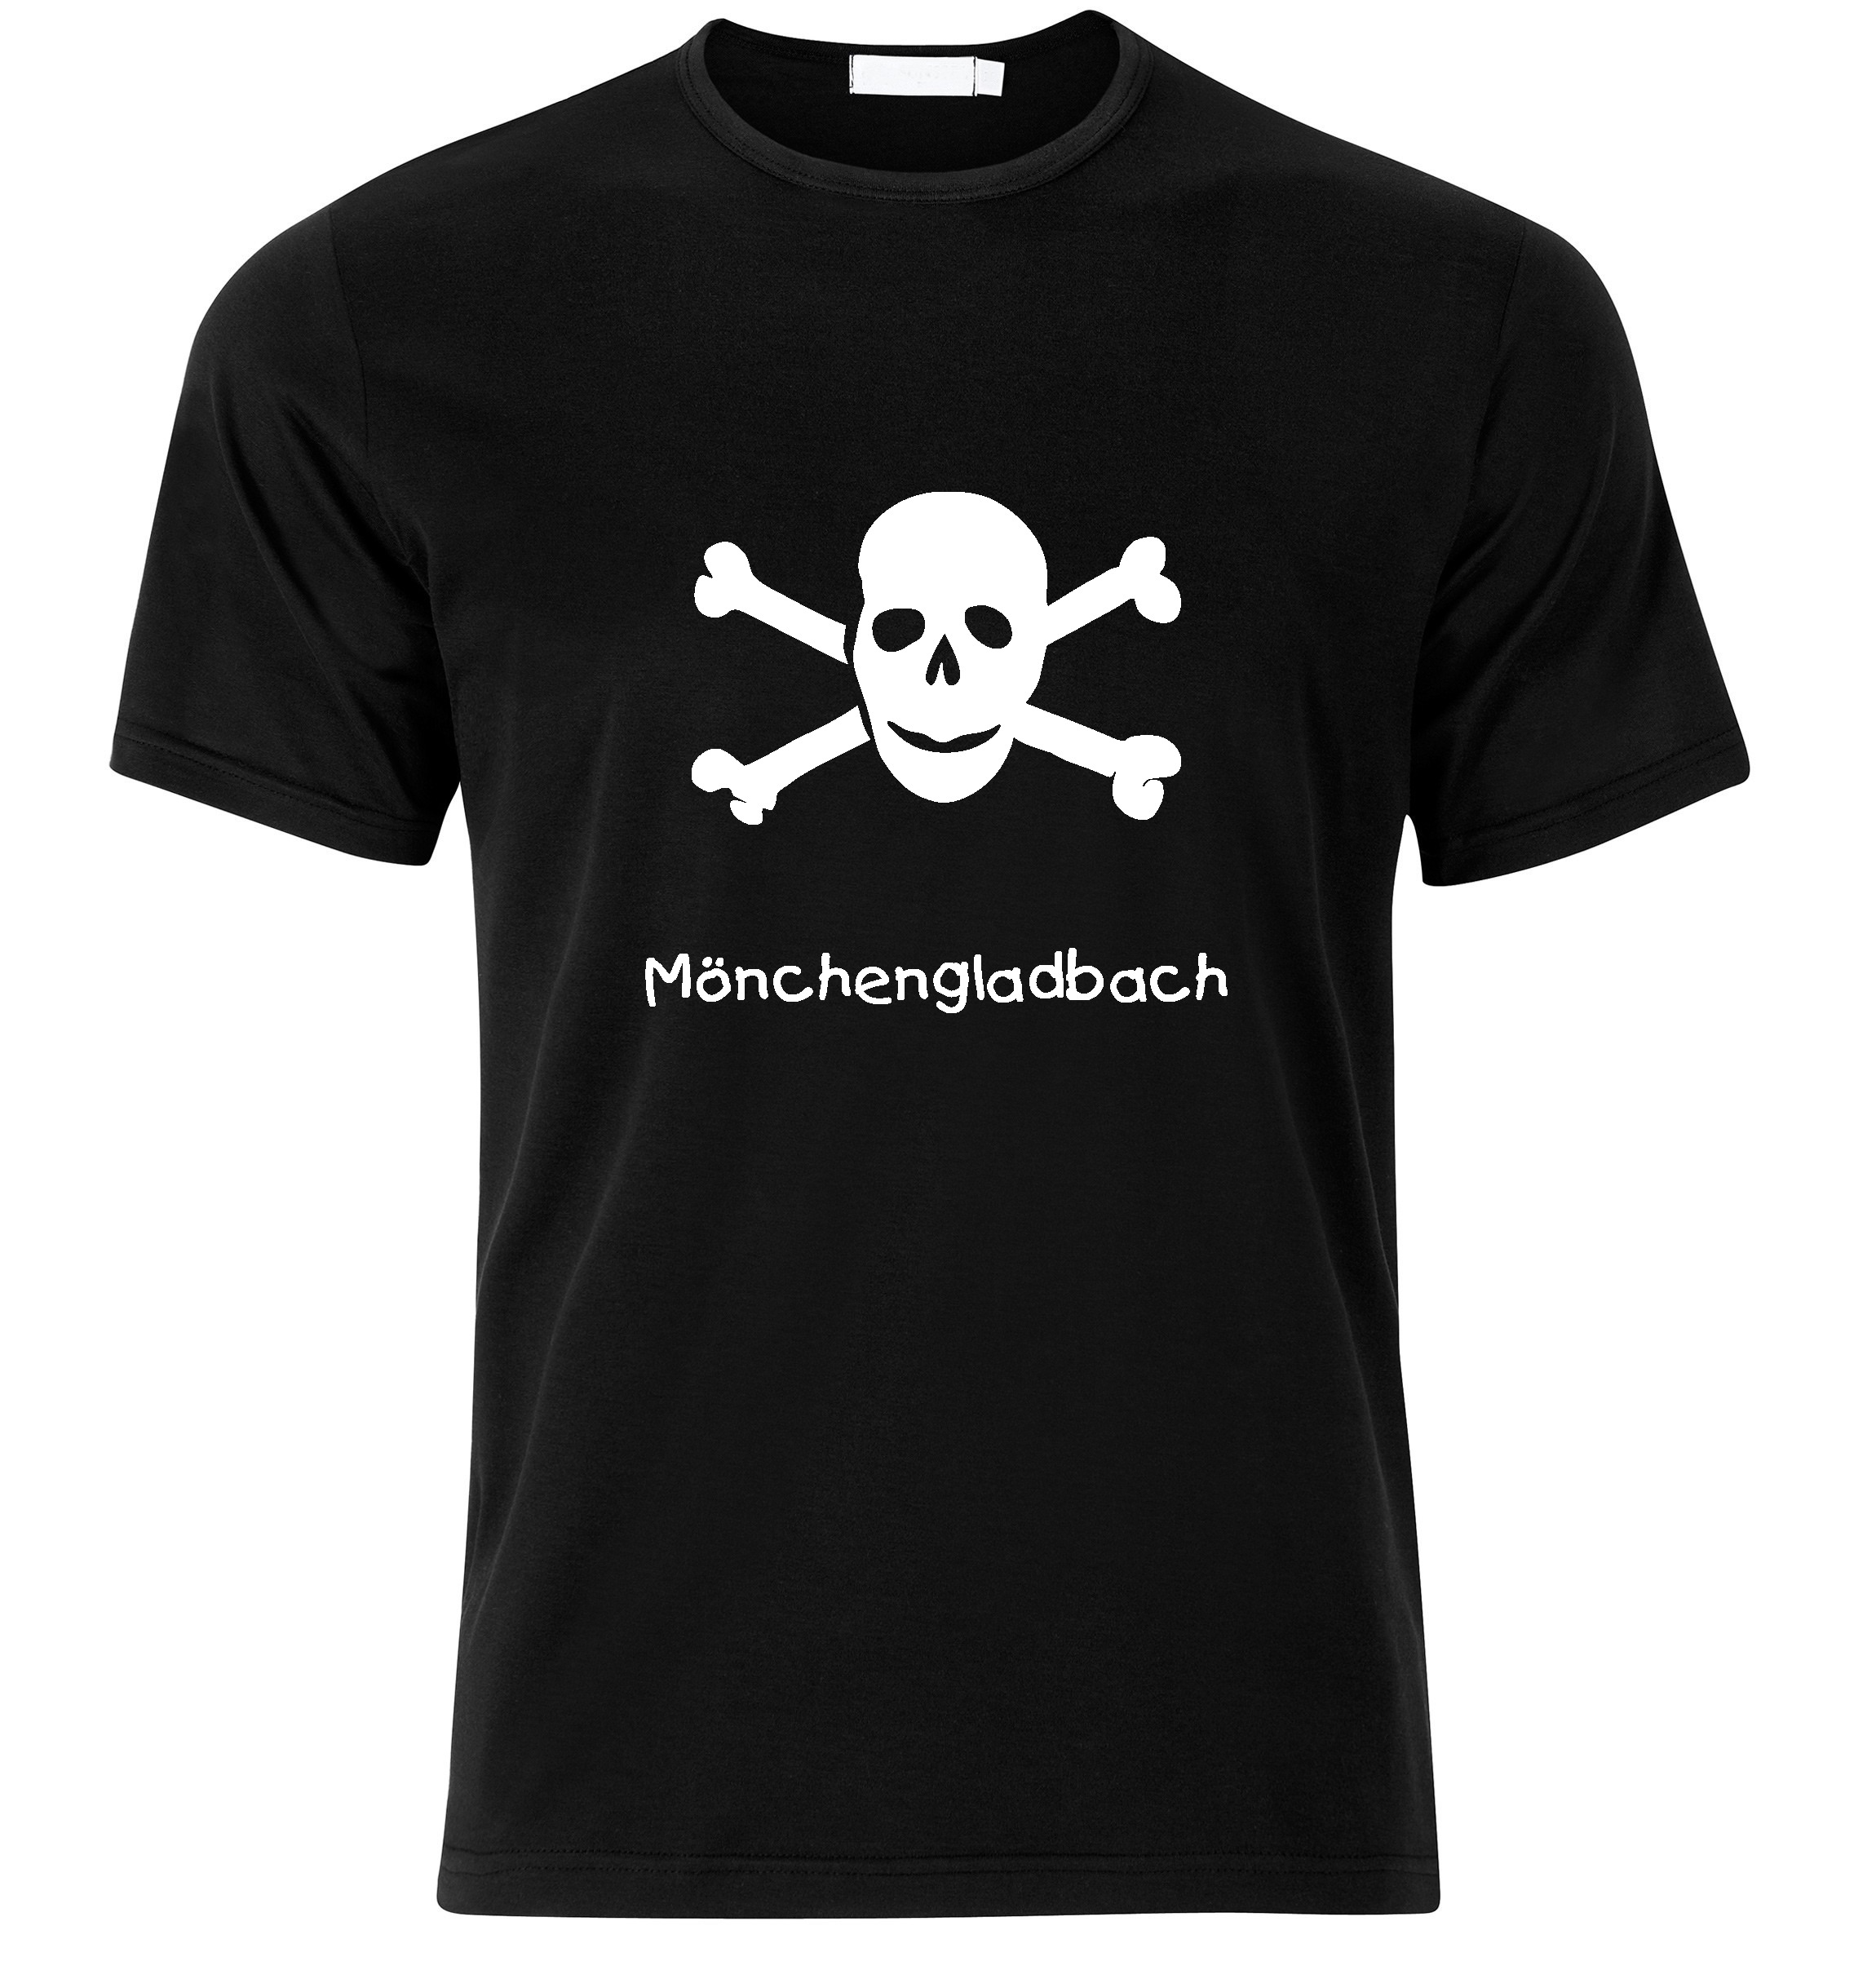 T-Shirt Mönchengladbach Jolly Roger, Totenkopf